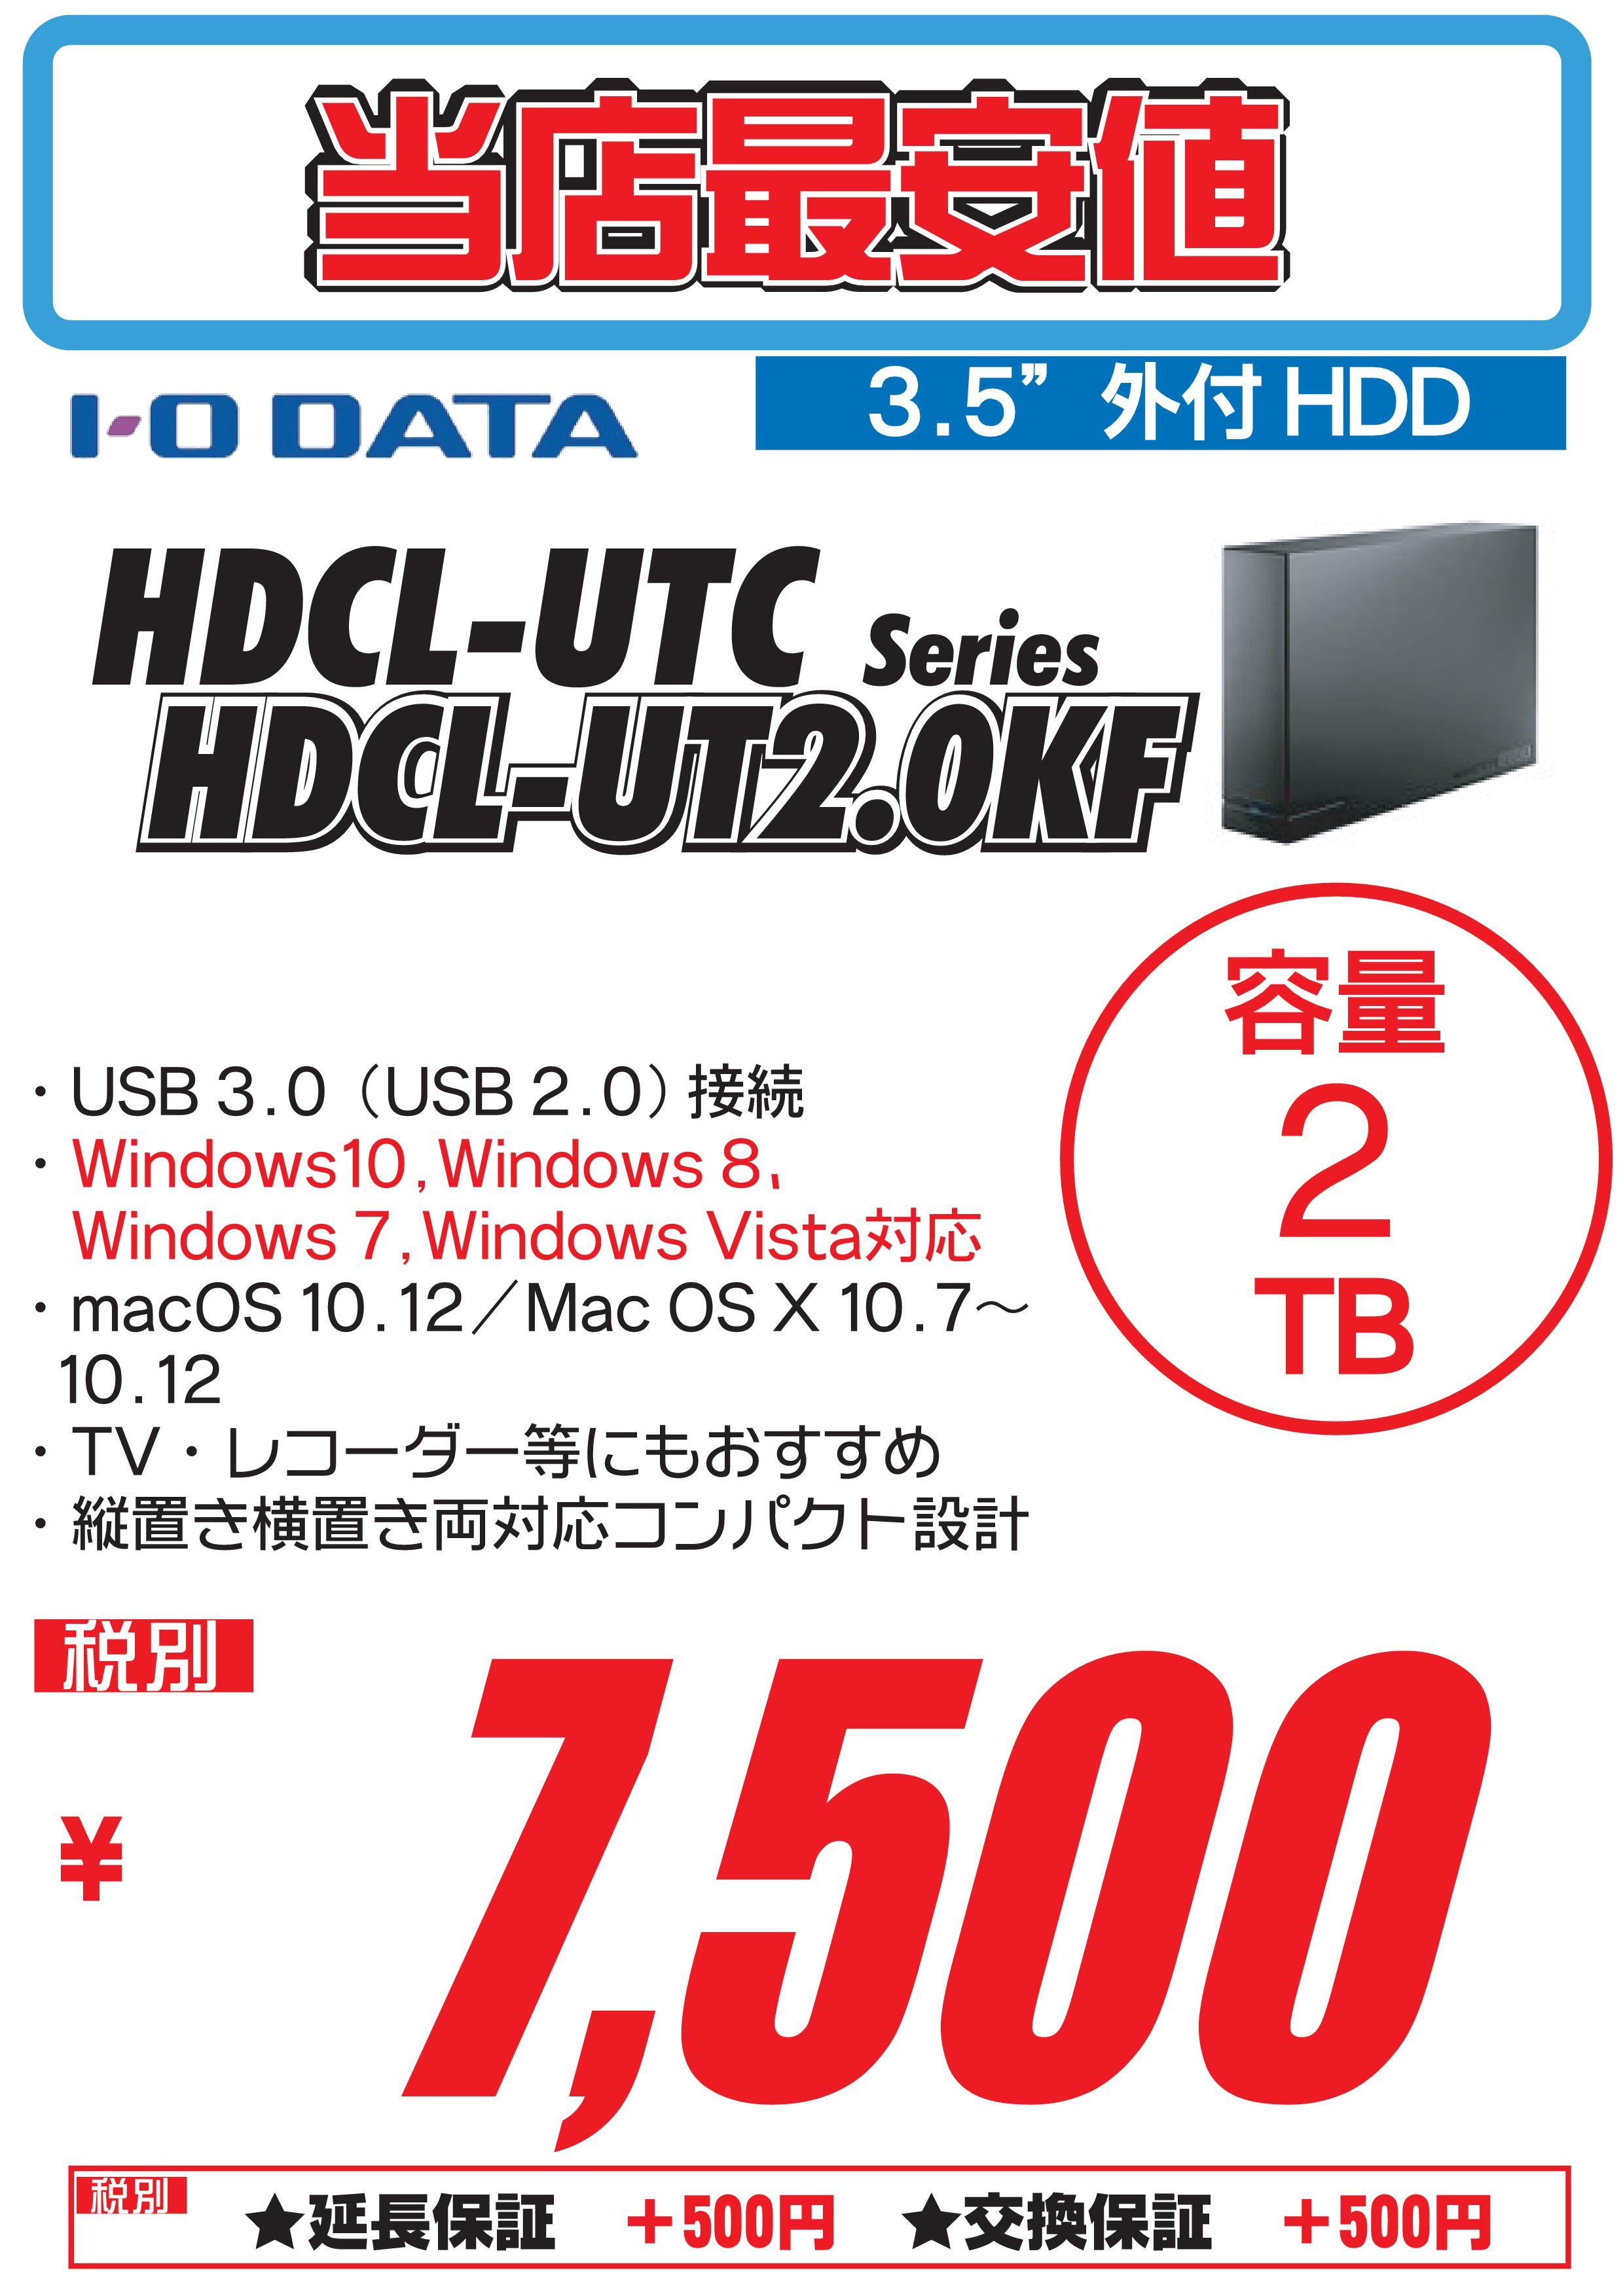 外付けハードディスク 2tb 3tbモデル価格見直しました 札幌 マル得速報